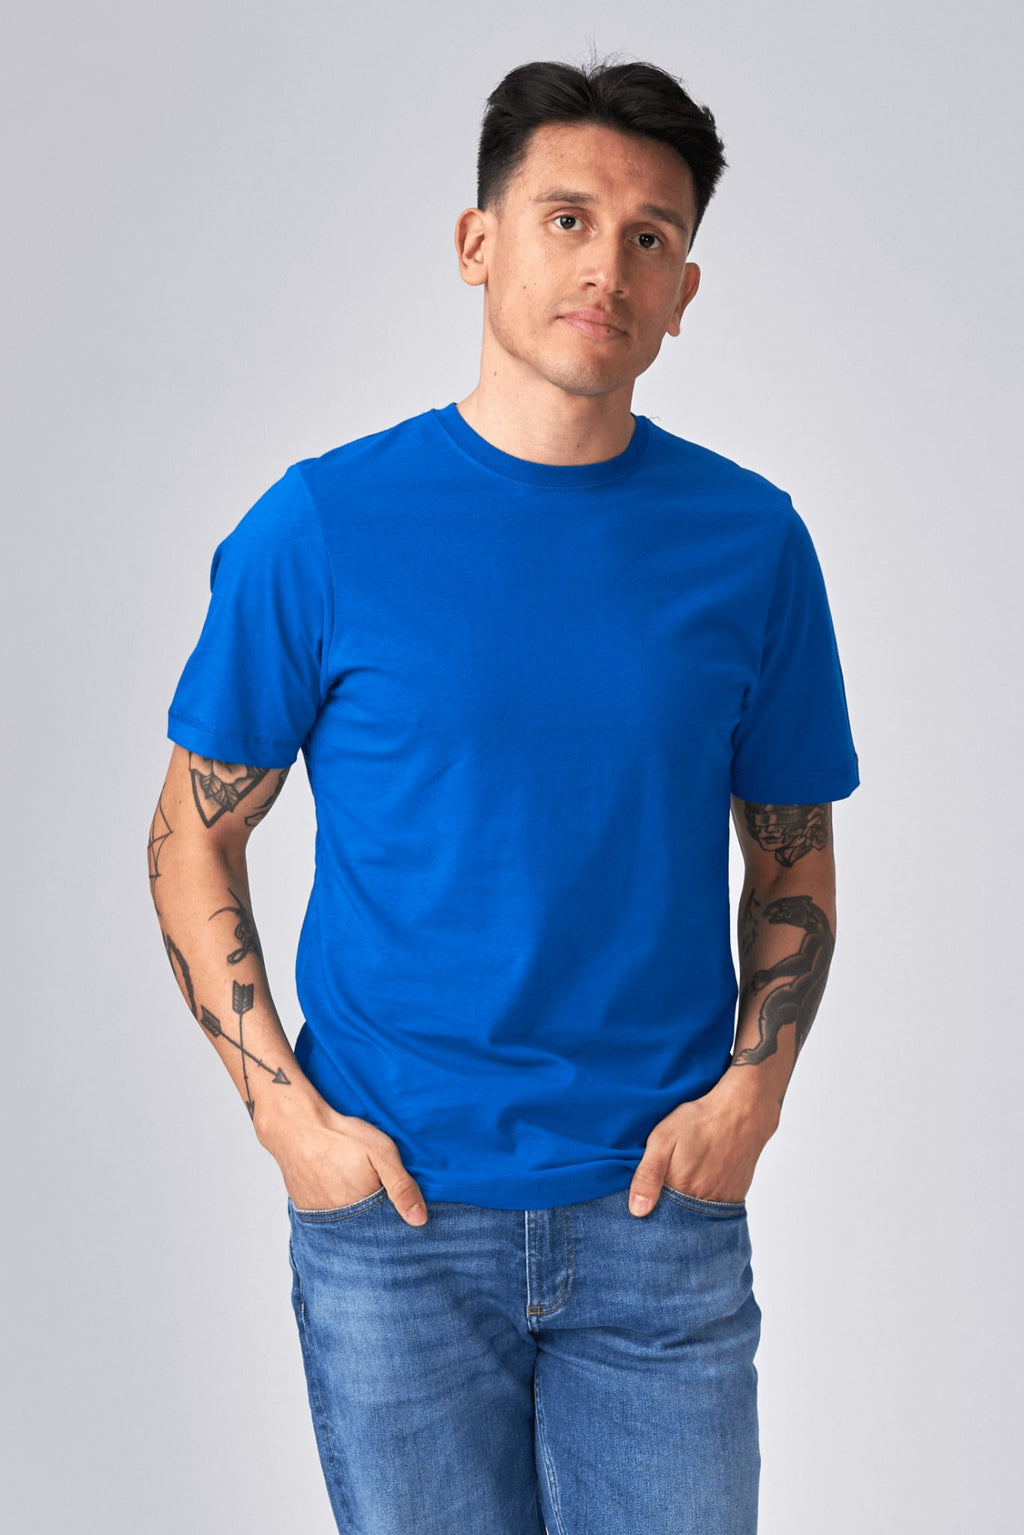 T -shirt di base organica - Blu